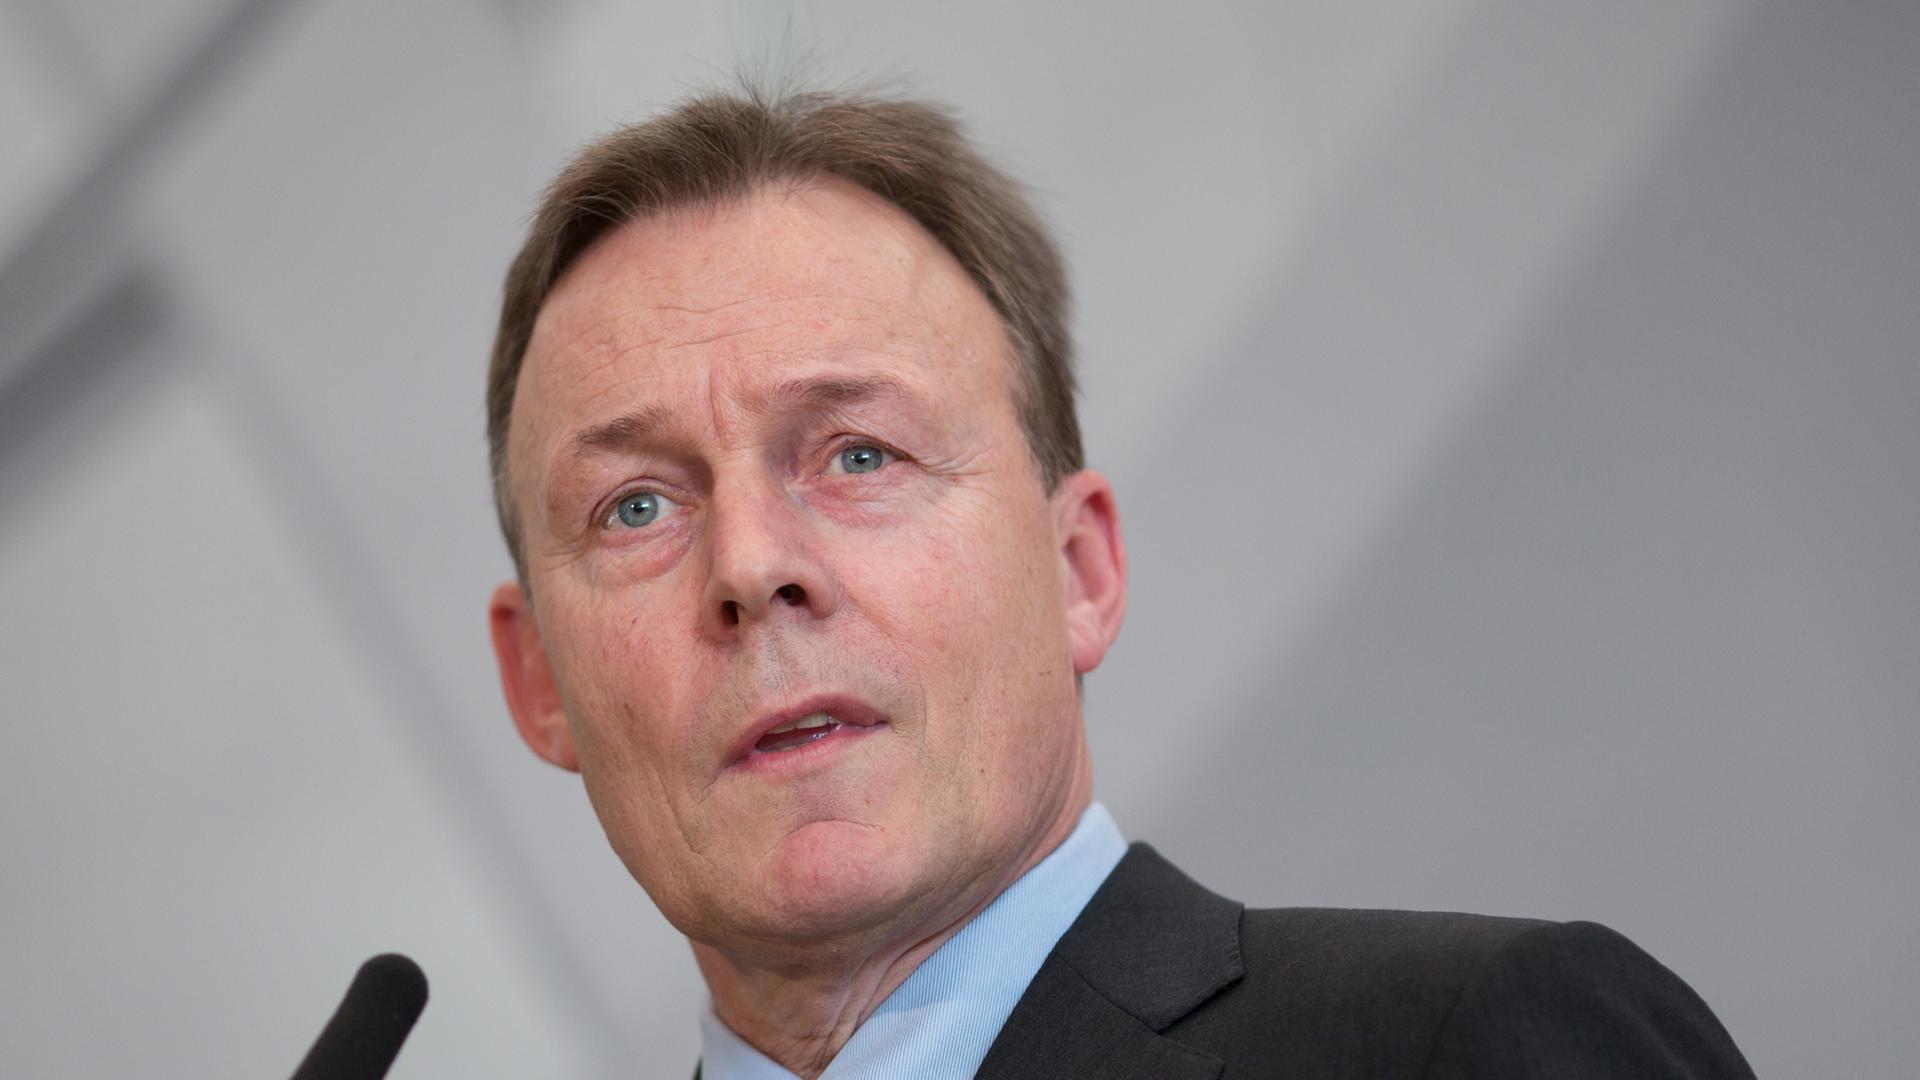 Der Vorsitzende der SPD-Bundestagsfraktion, Thomas Oppermann, steht am 11.02.2014 im Reichstag vor einem Mikrofon.